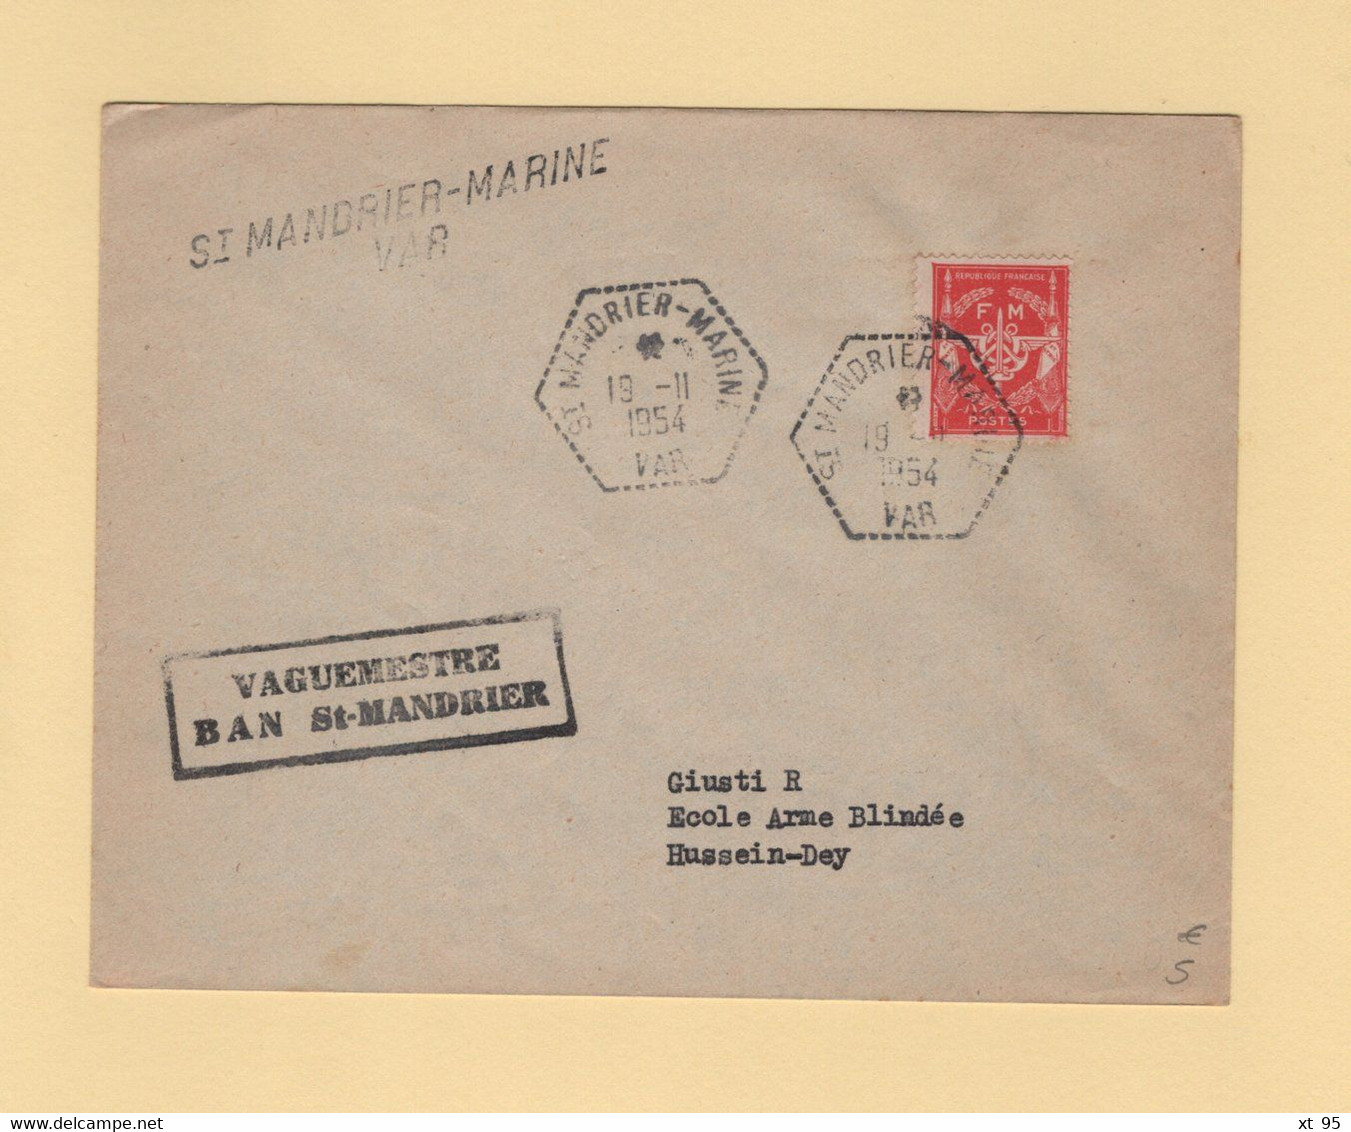 St Mandrier Marine - Var - 19-11-1954 - Vaguemestre BAN St Mandrier - Timbre FM - Militaire Zegels